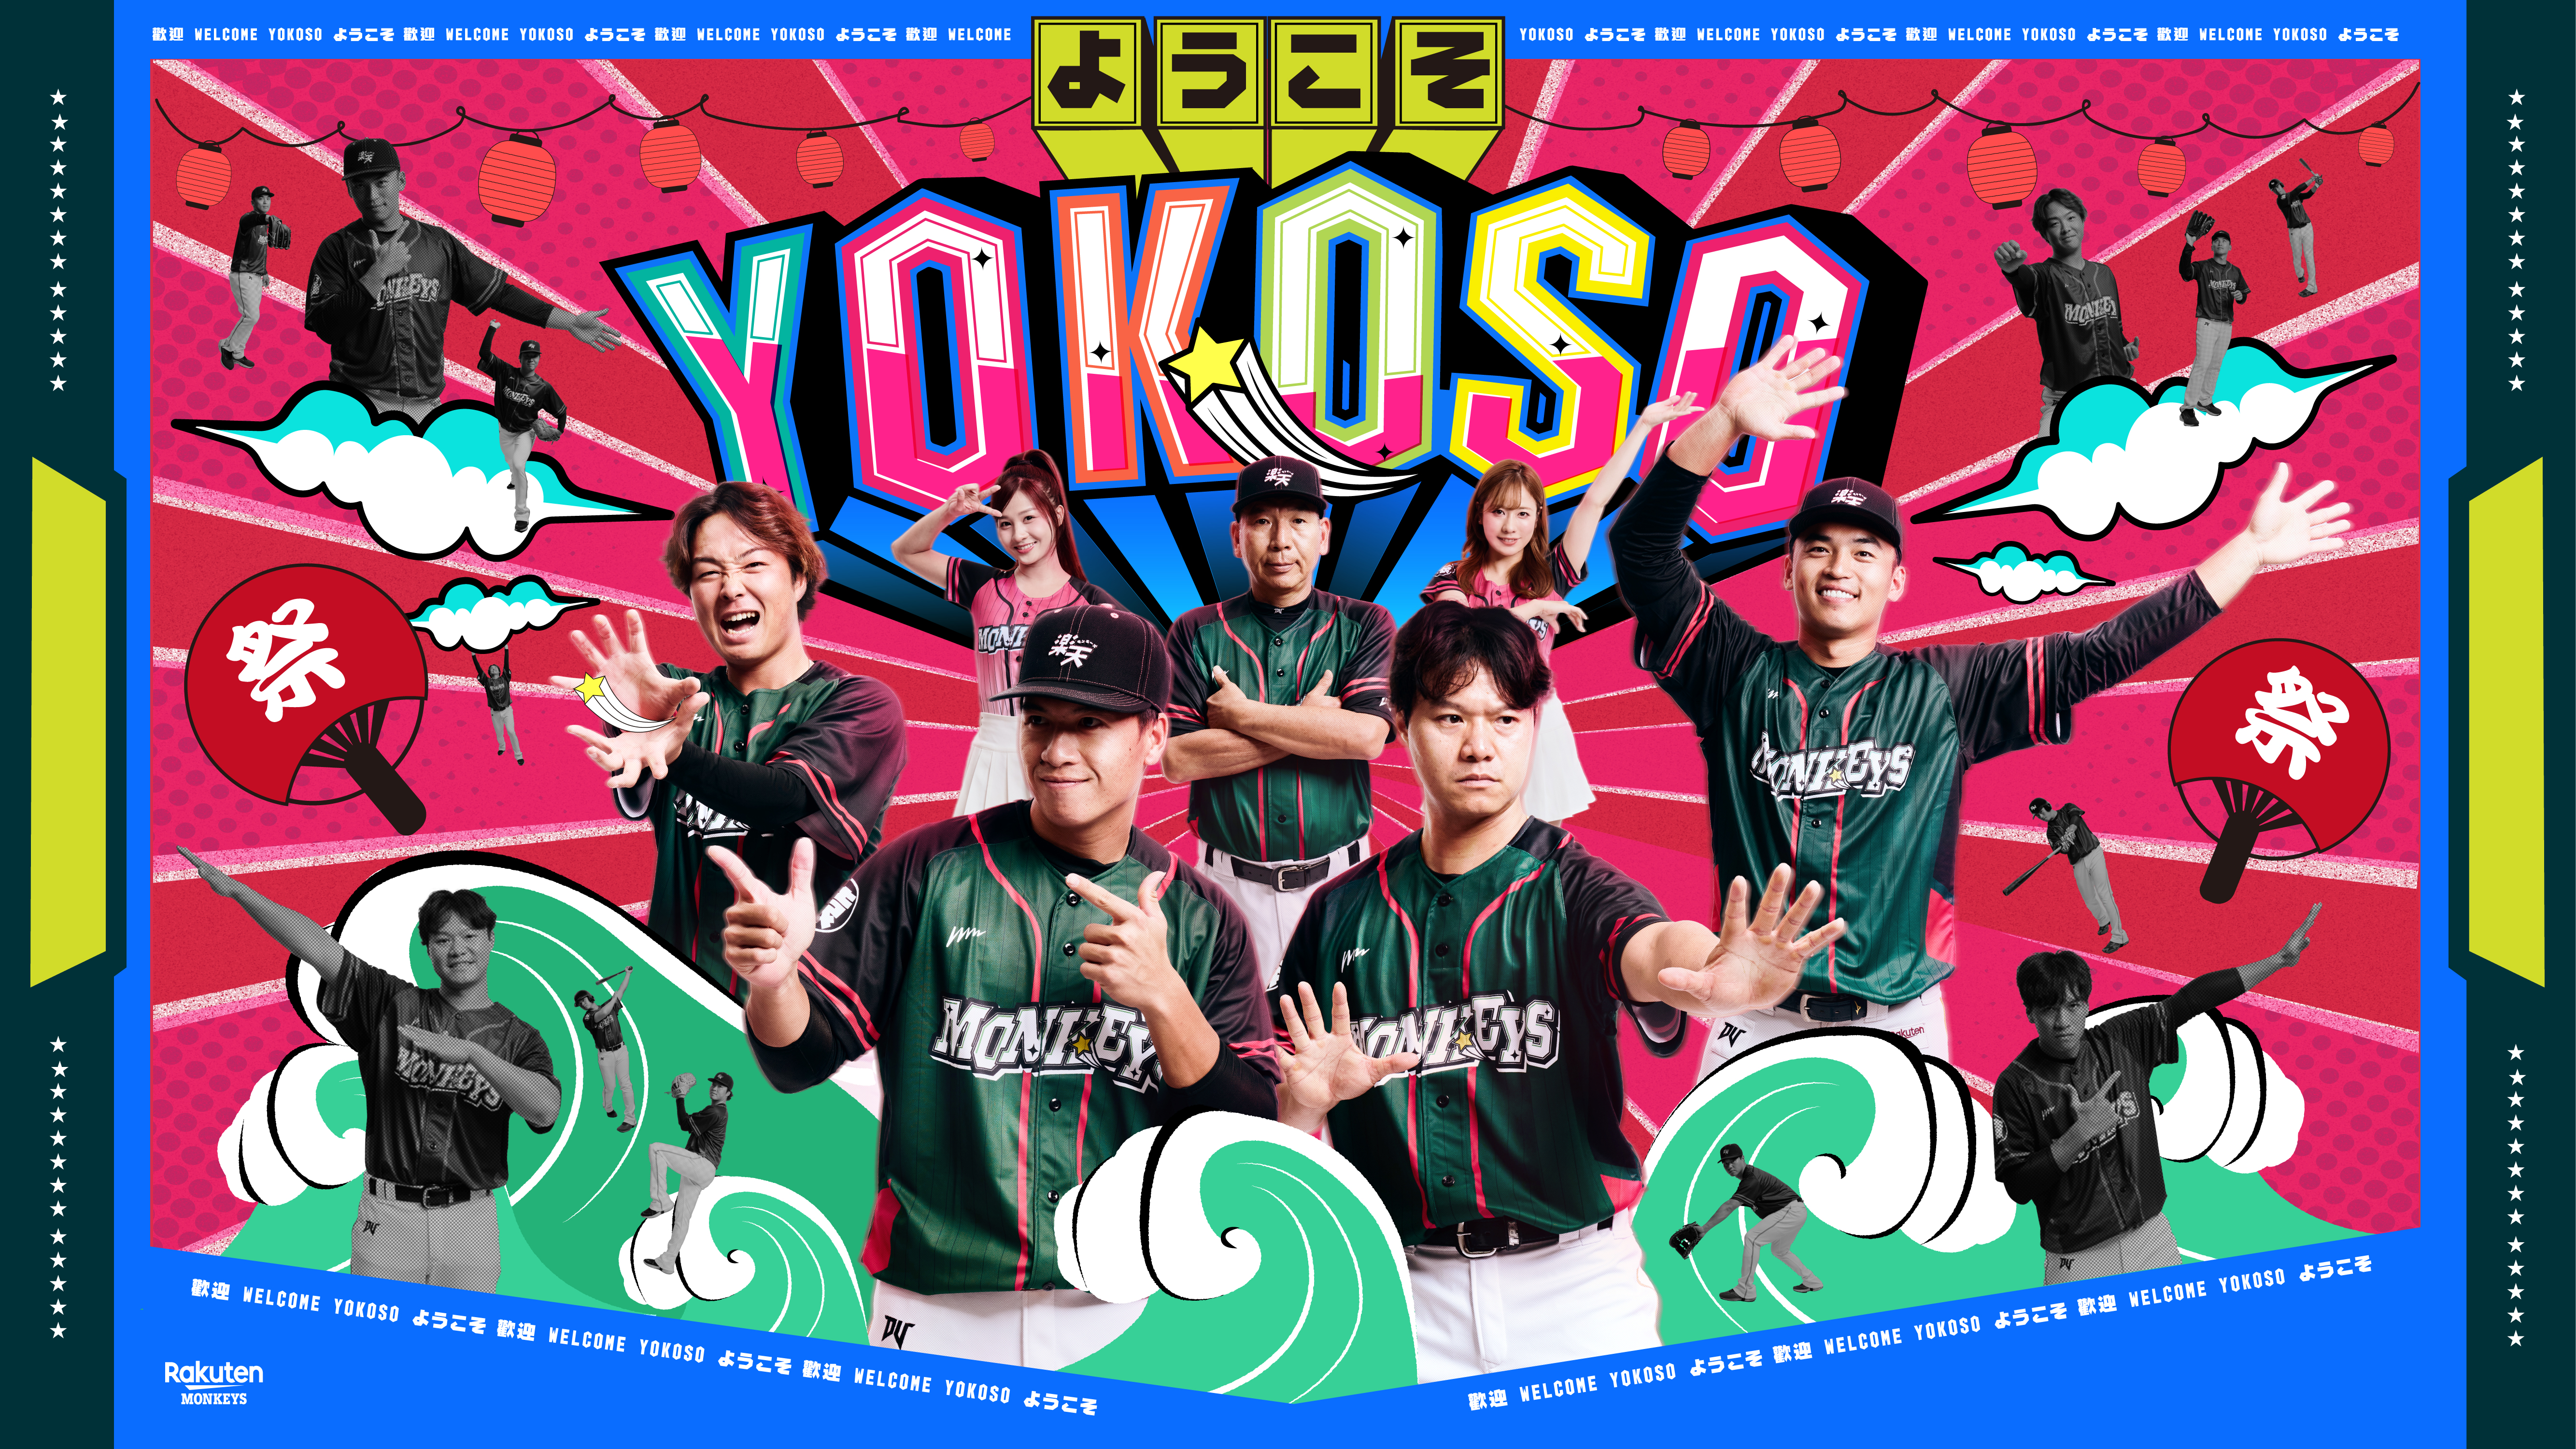 乐天桃猿队公布YOKOSO趴主视觉。图／乐天桃猿队提供